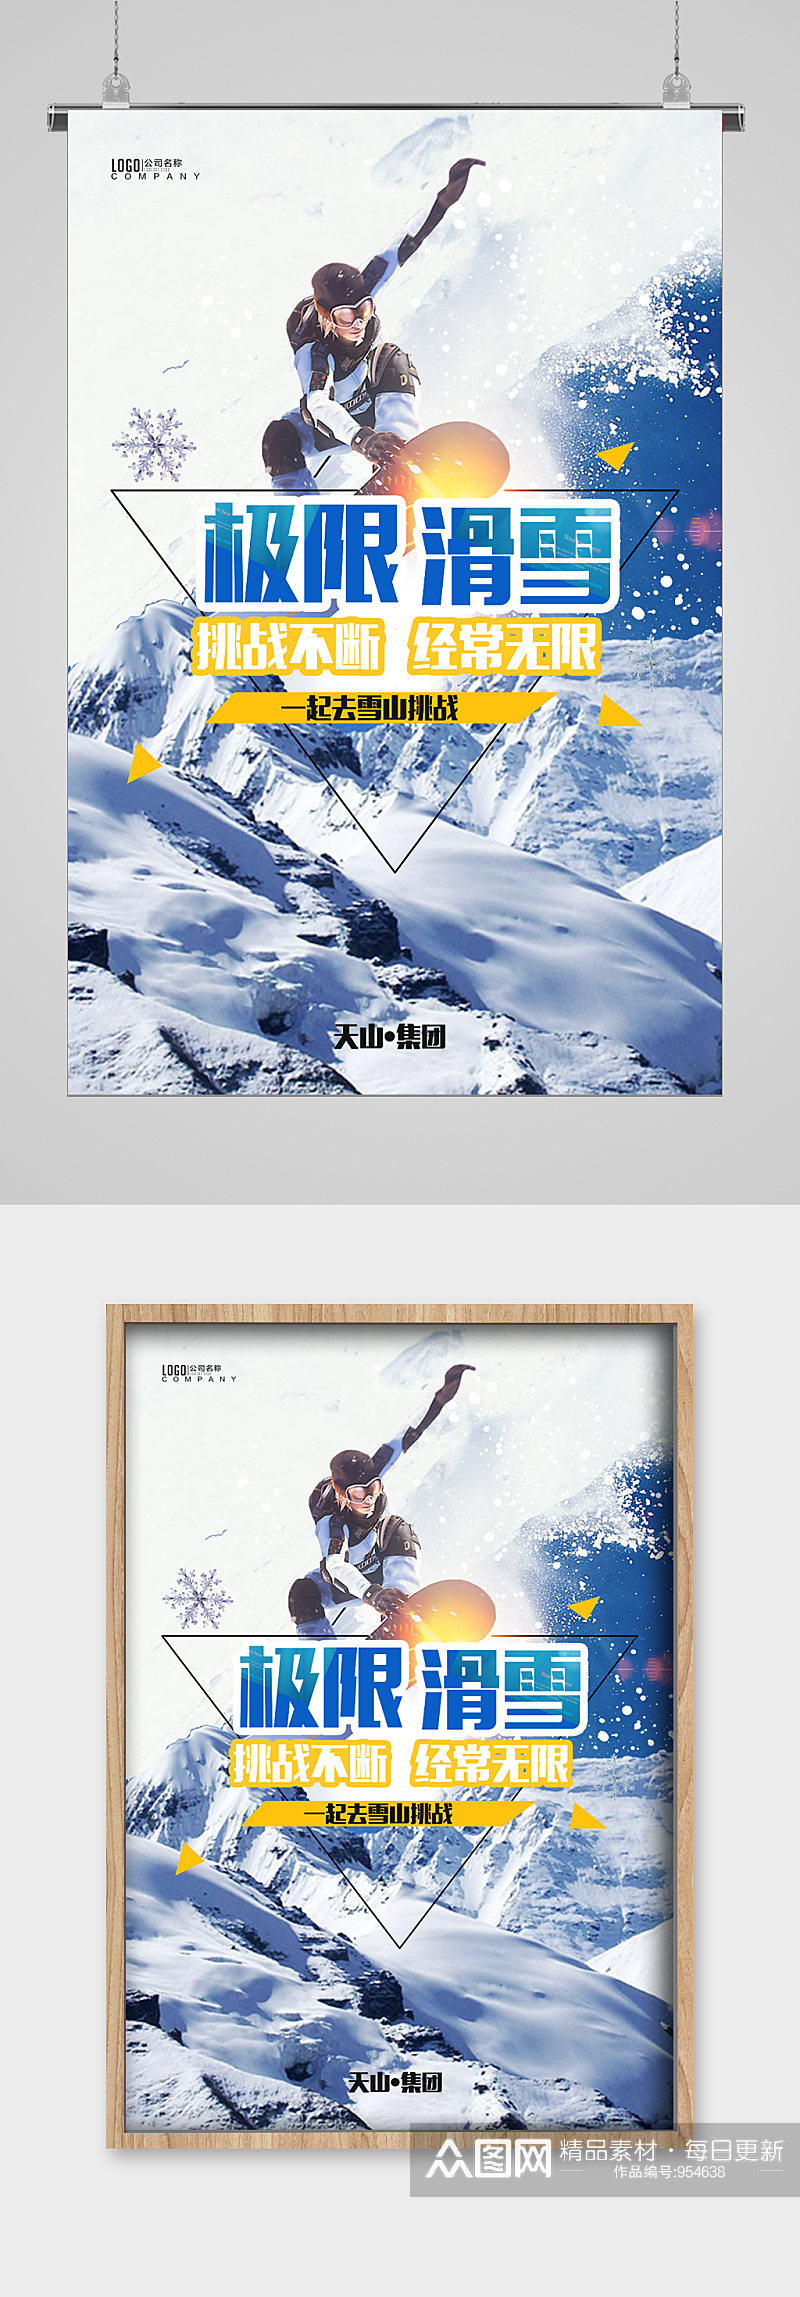 冬季滑雪挑战宣传海报素材